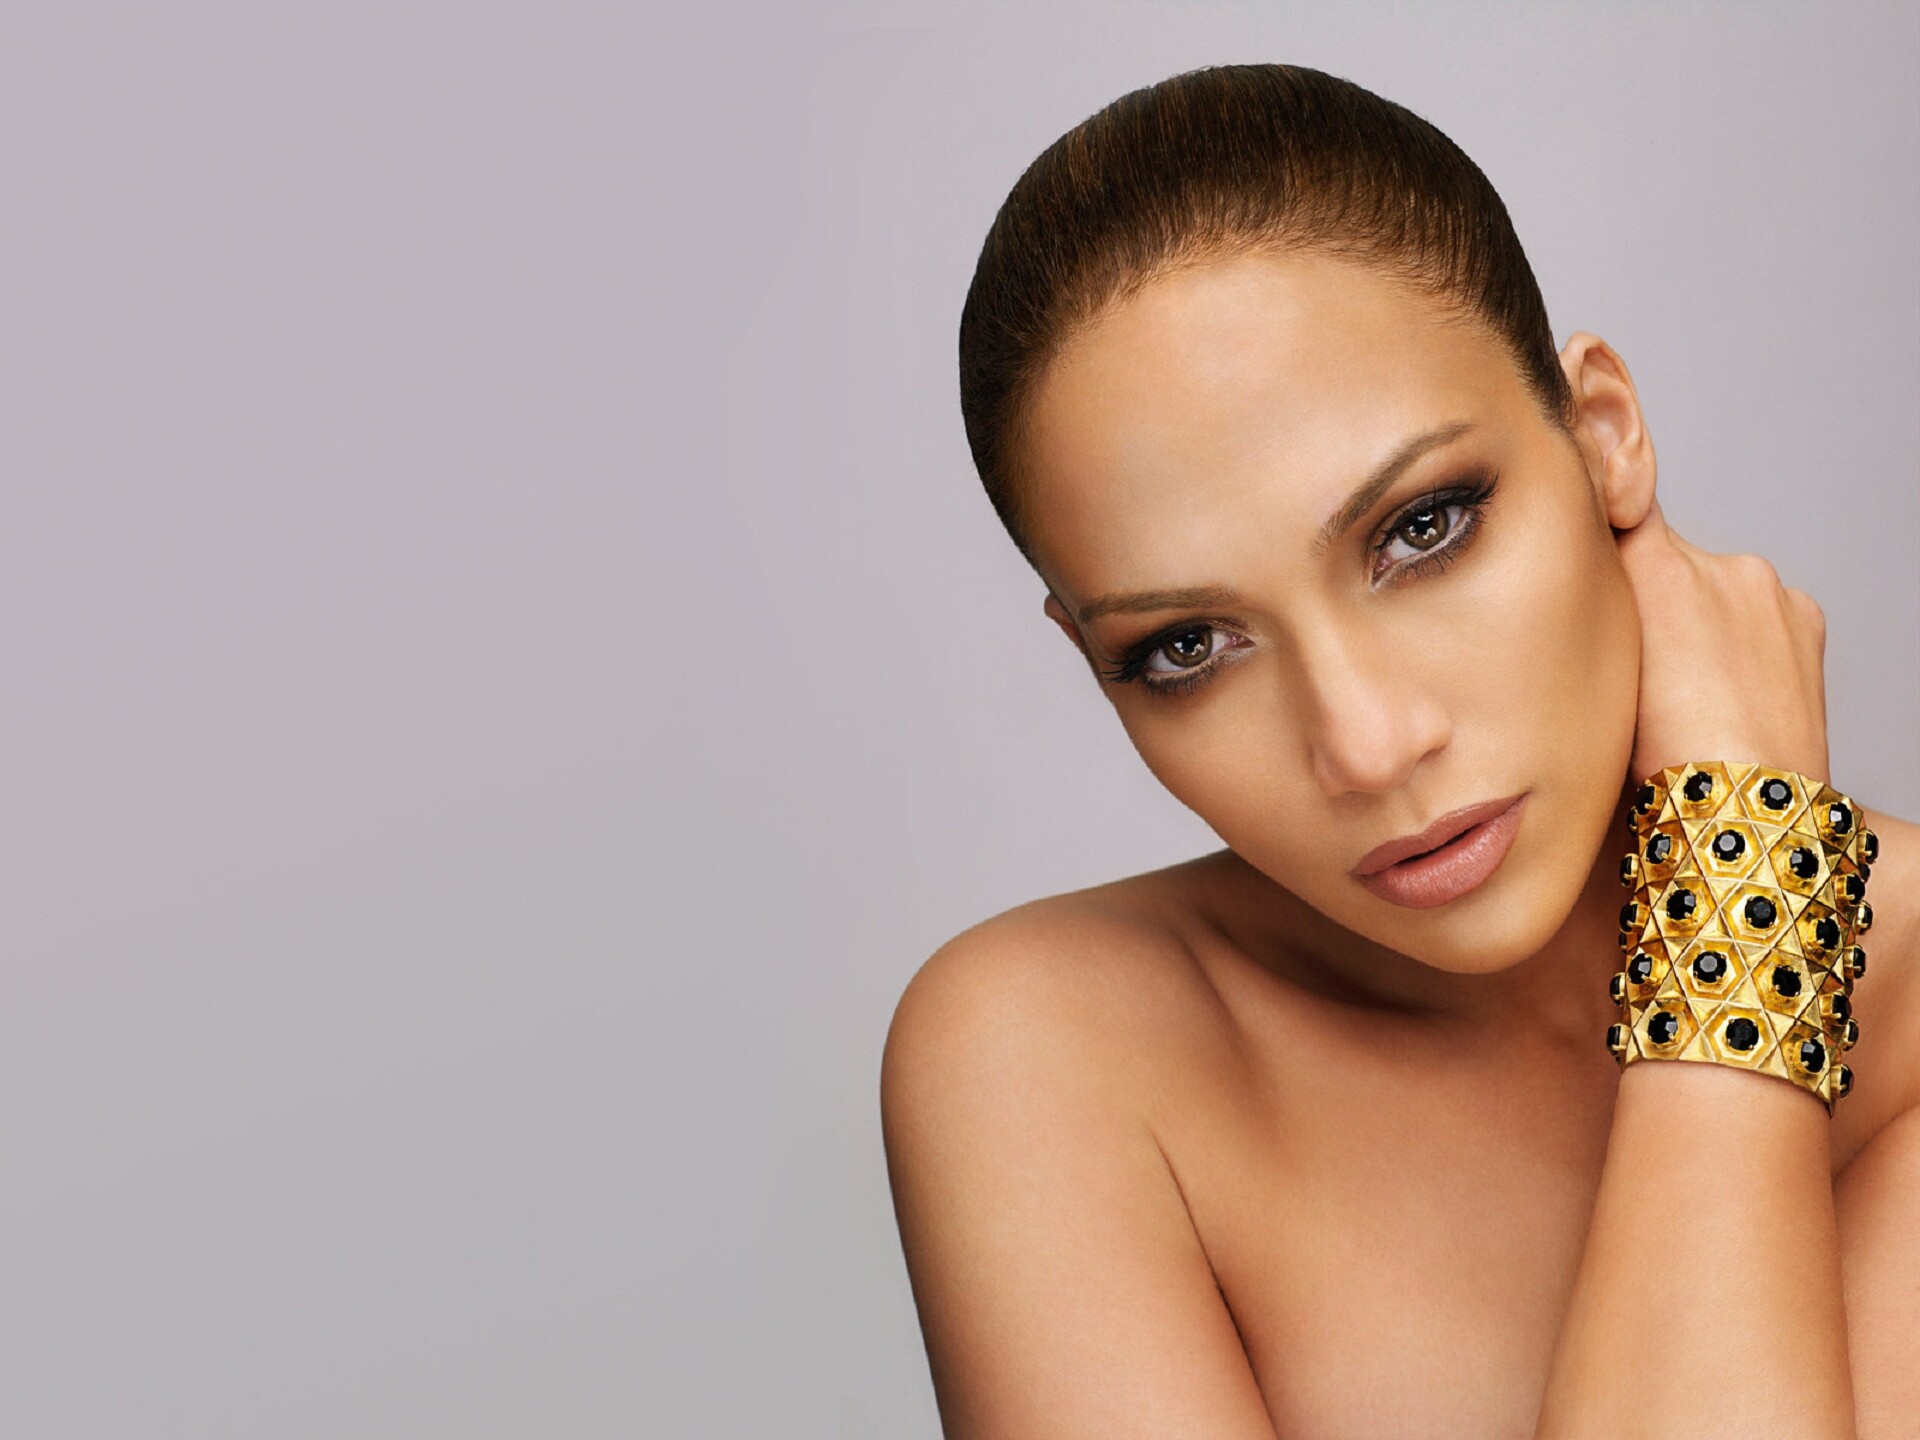 Jennifer Lopez: Top Ten studio album, A.K.A., 2014. 1920x1440 HD Wallpaper.